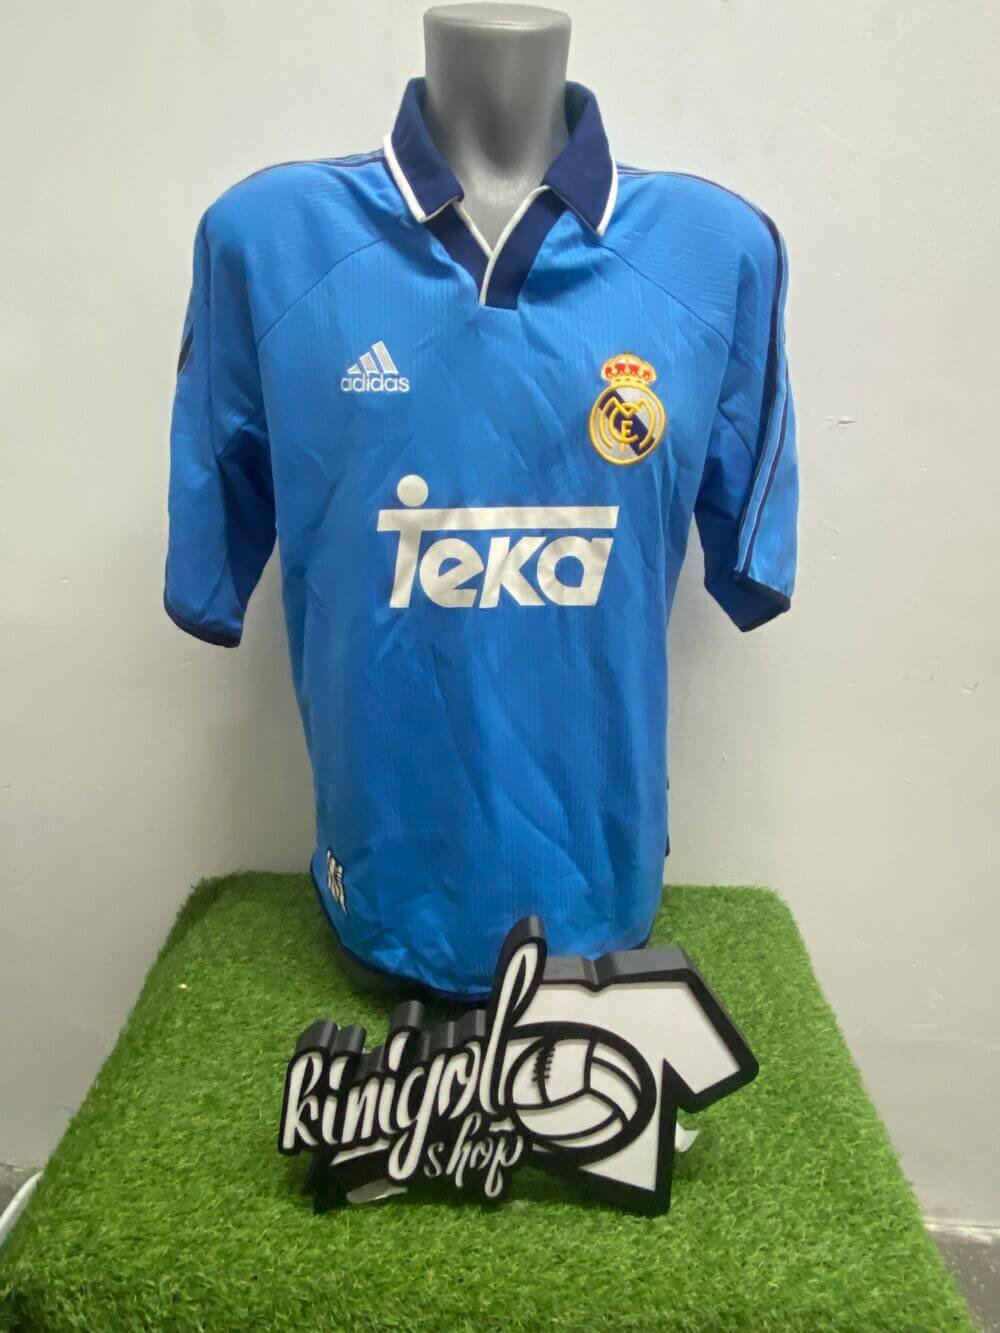 Camiseta-real-madrid-kinigolshop-1999-tercera